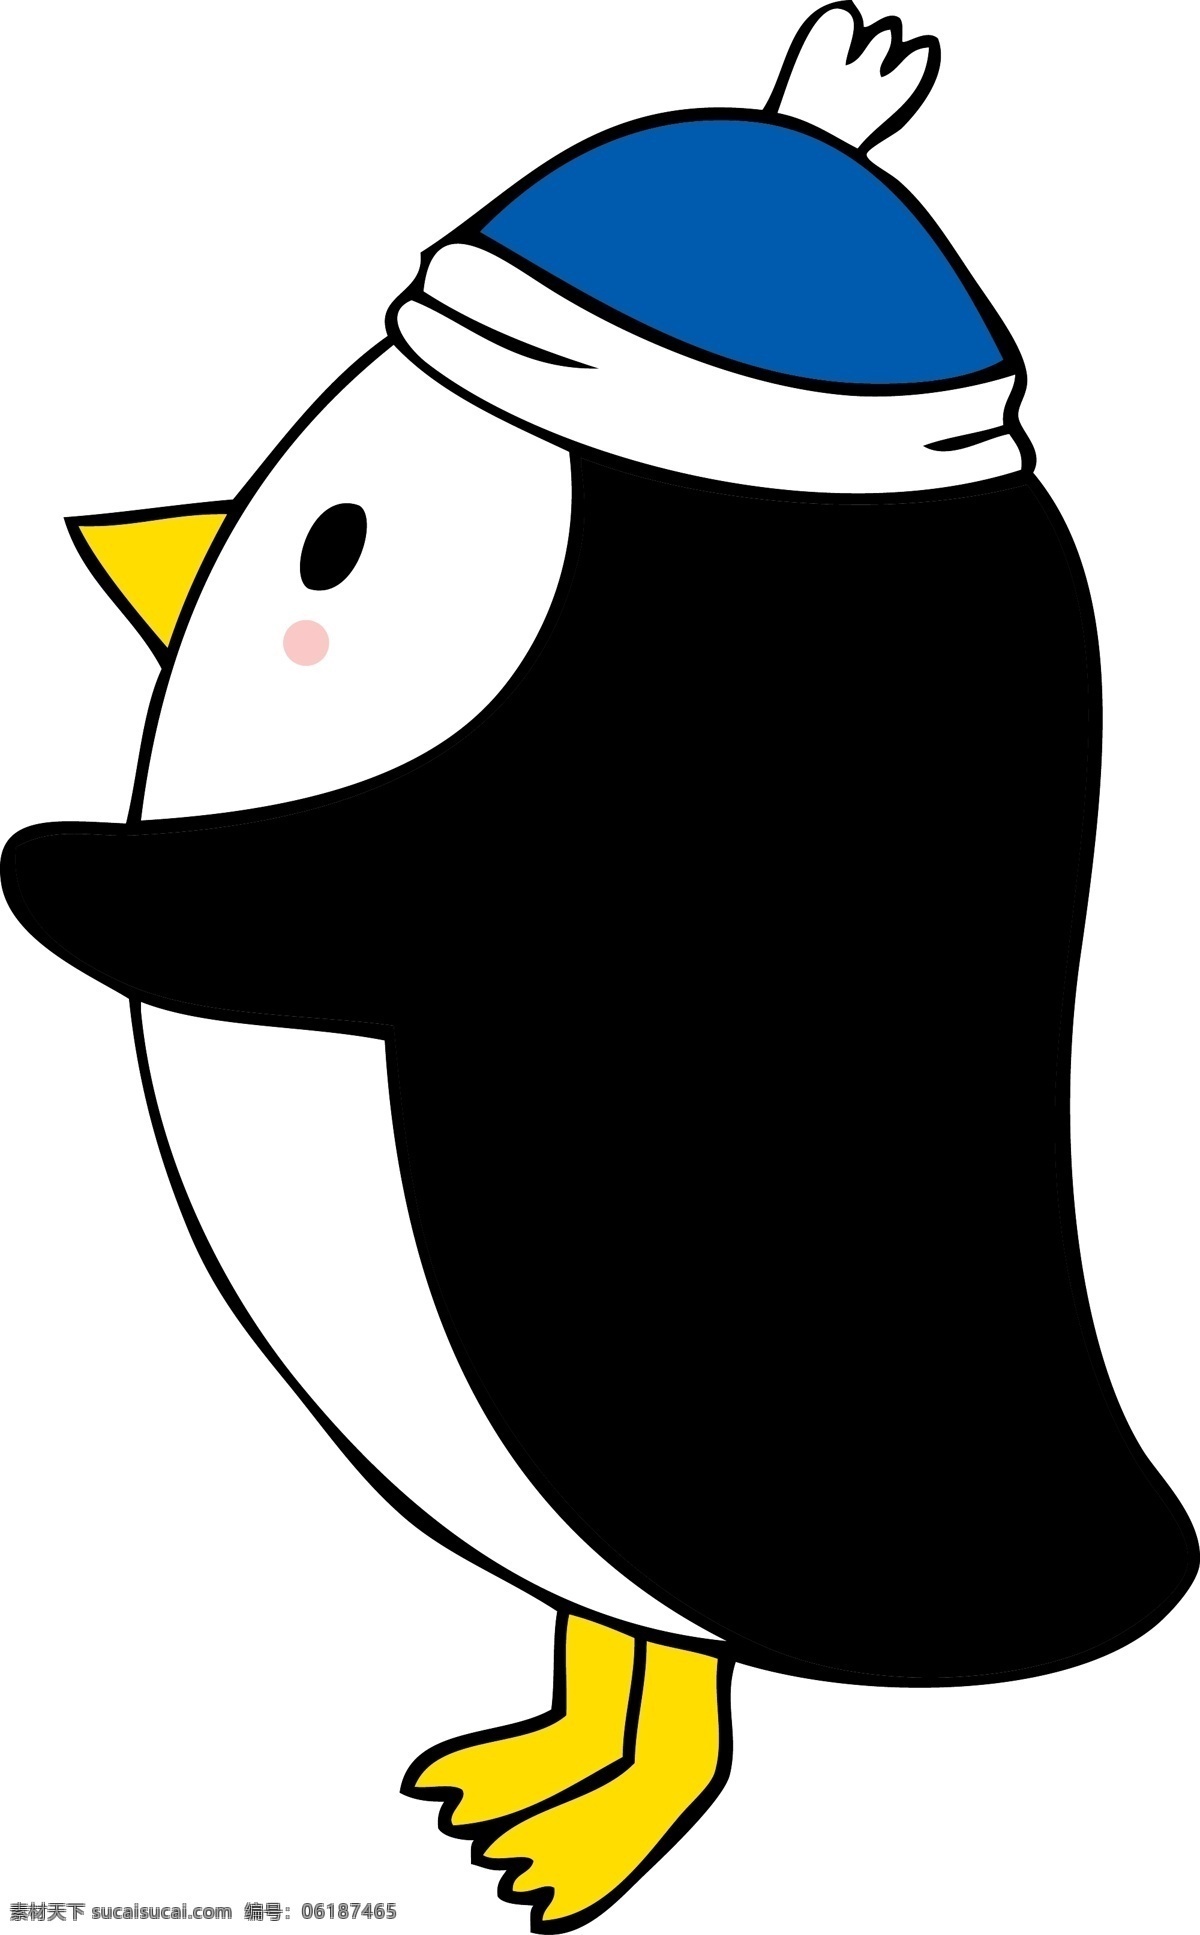 企鹅手绘图片 卡通企鹅 手绘企鹅插画 手绘插画 企鹅素材 企鹅元素 可爱企鹅 矢量卡通企鹅 卡通矢量企鹅 小企鹅 企鹅简笔画 卡通素材 矢量素材 矢量企鹅 手绘企鹅 企鹅插画 可爱卡通 企鹅 可爱卡通企鹅 漫画企鹅 卡通设计